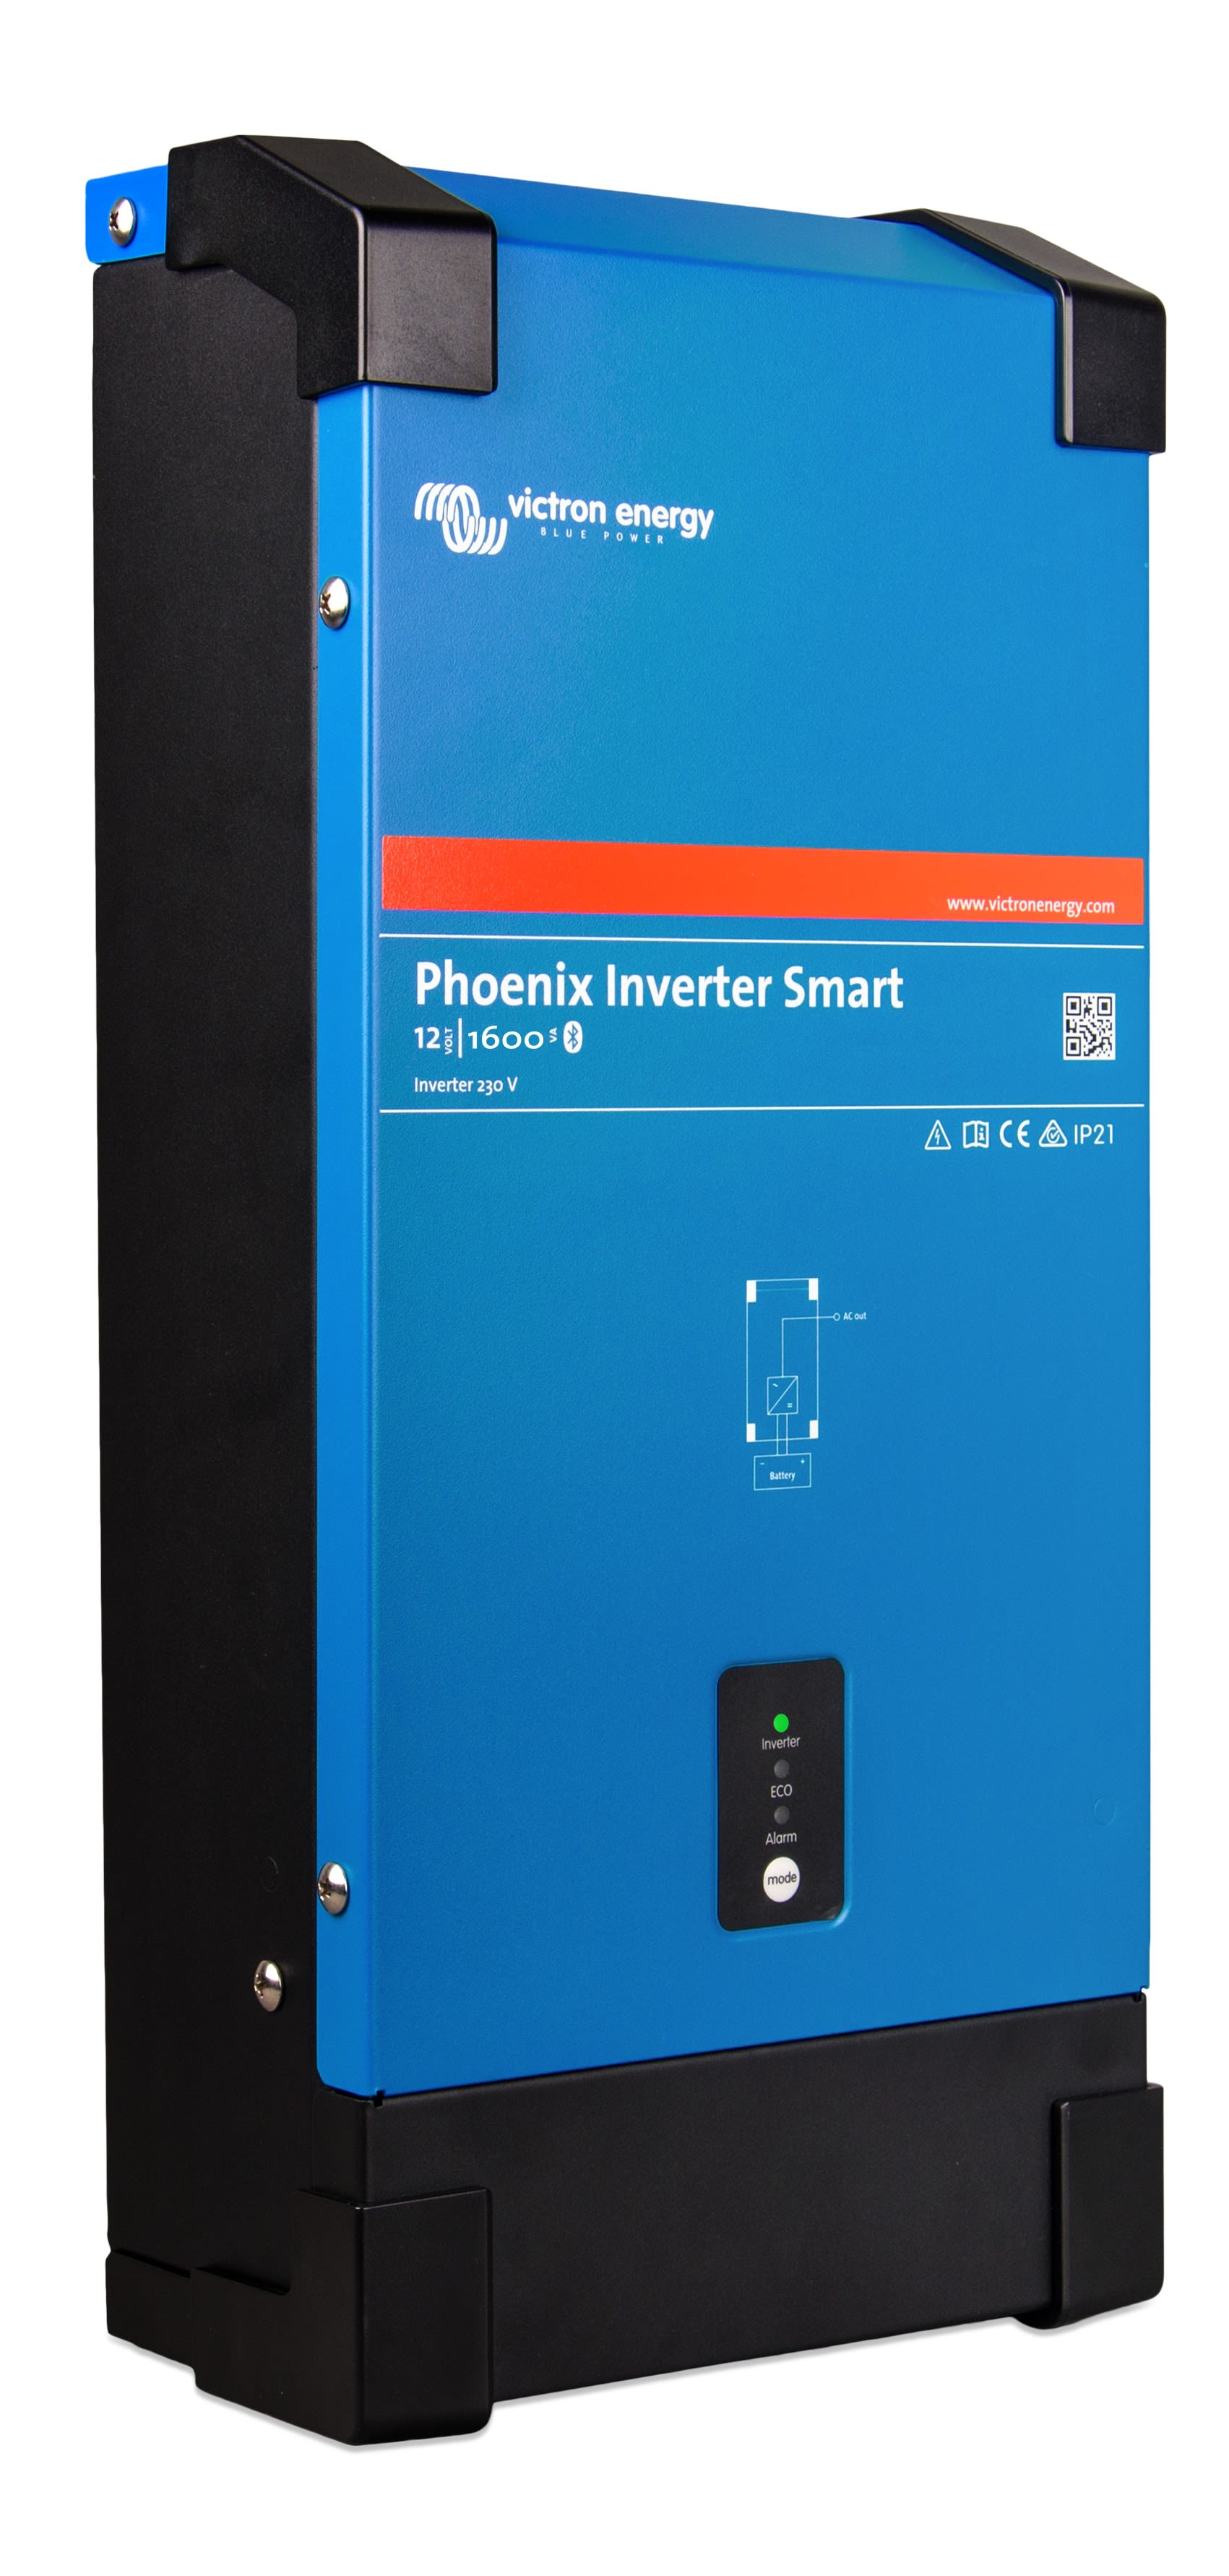 Madenr - Phoenix Inverter 12/1600 230V Smart